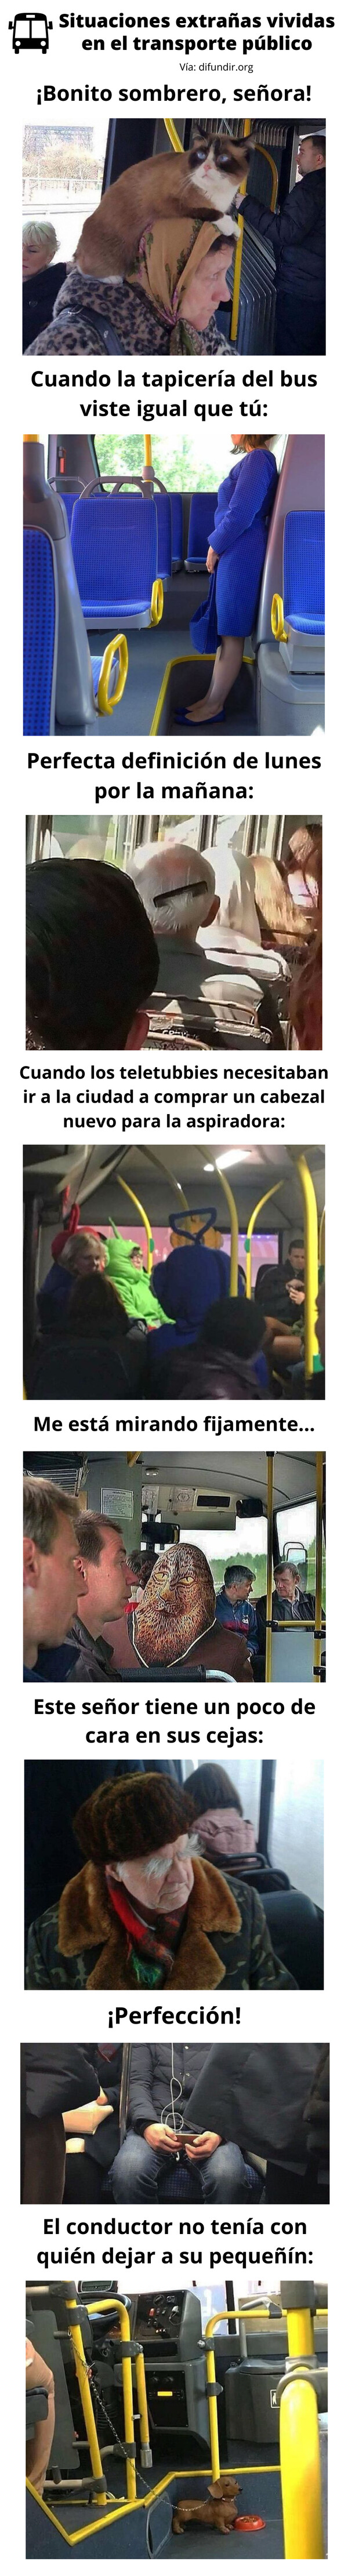 Meme_otros - Situaciones extrañas vividas en el transporte público